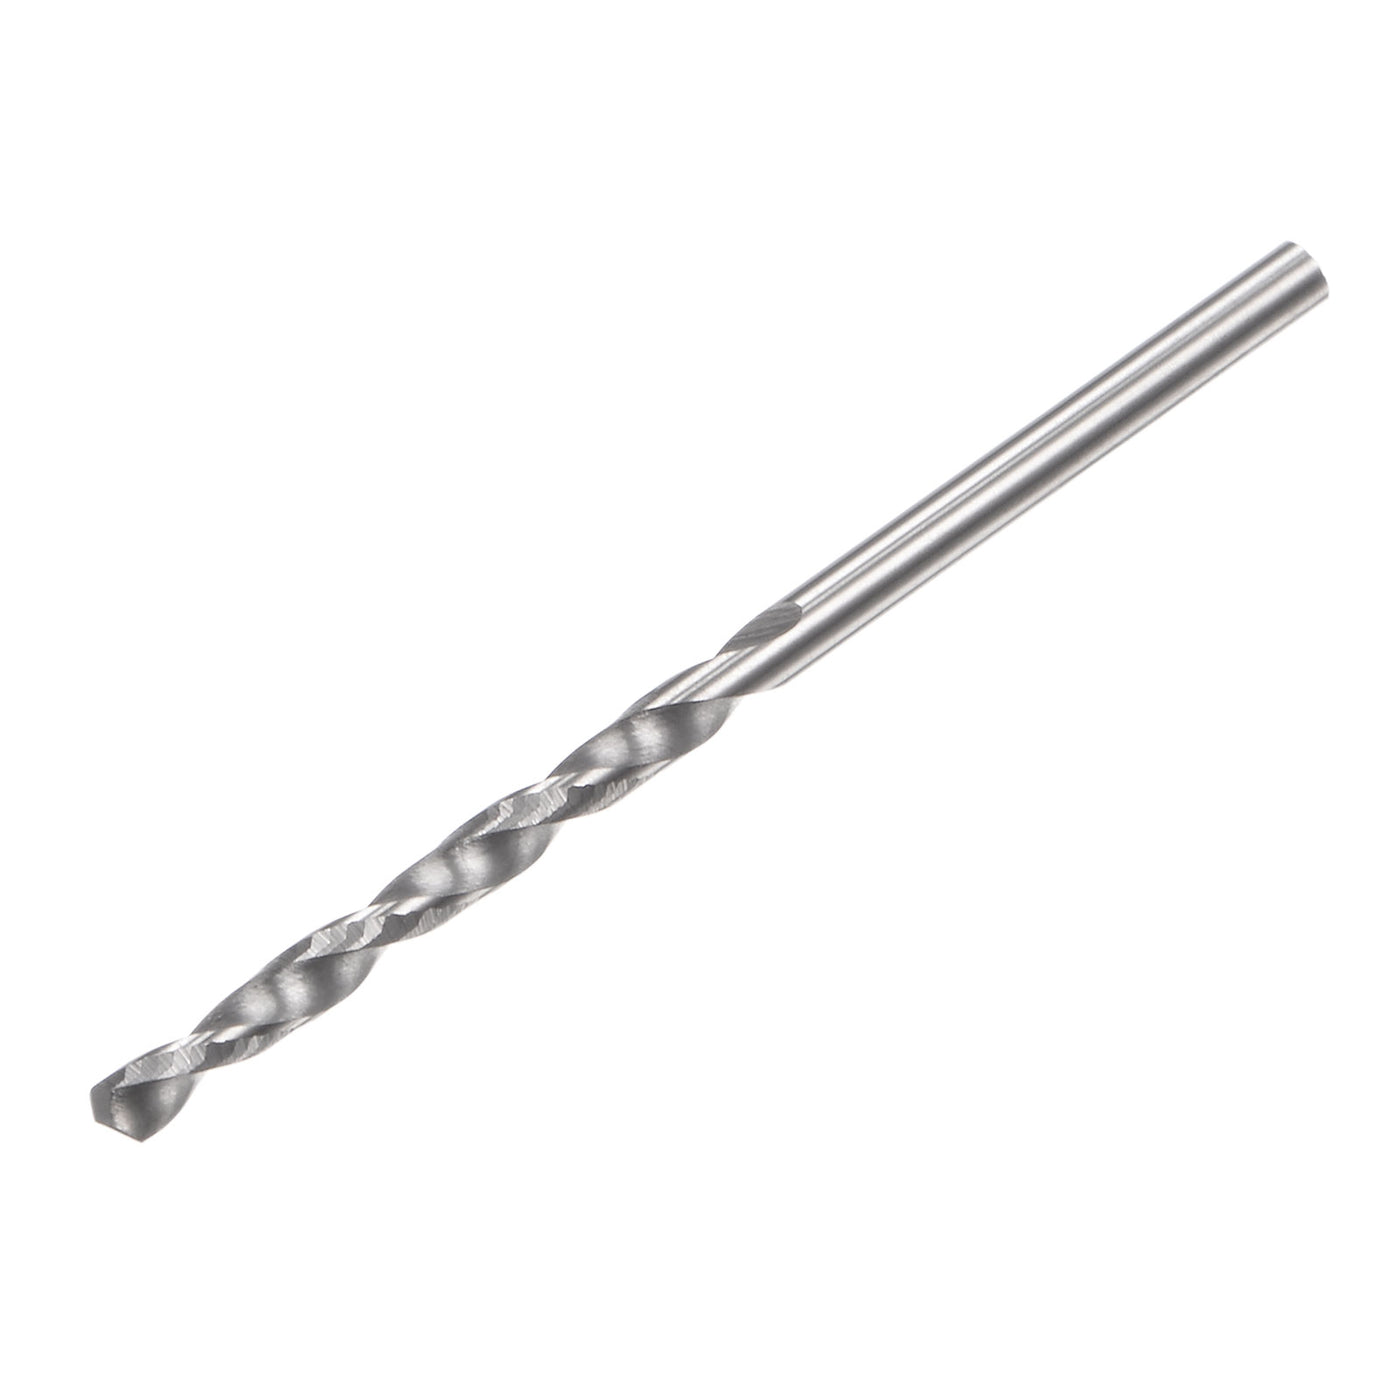 uxcell Uxcell 1.8mm C2/K20 Tungsten Carbide Straight Shank Spiral Flutes Twist Drill Bit